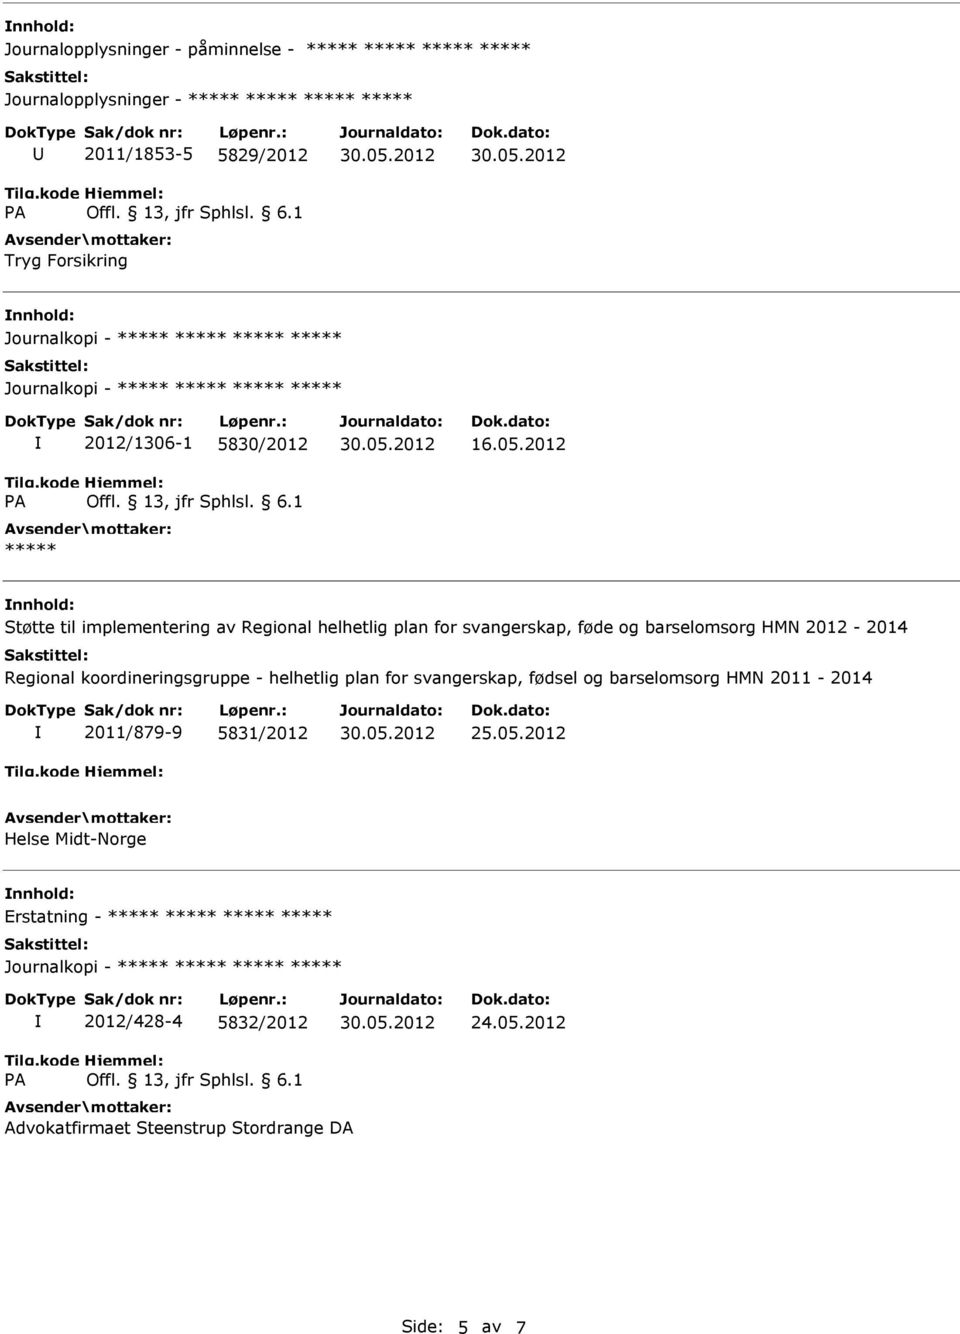 Regional koordineringsgruppe - helhetlig plan for svangerskap, fødsel og barselomsorg HMN 2011-2014 2011/879-9